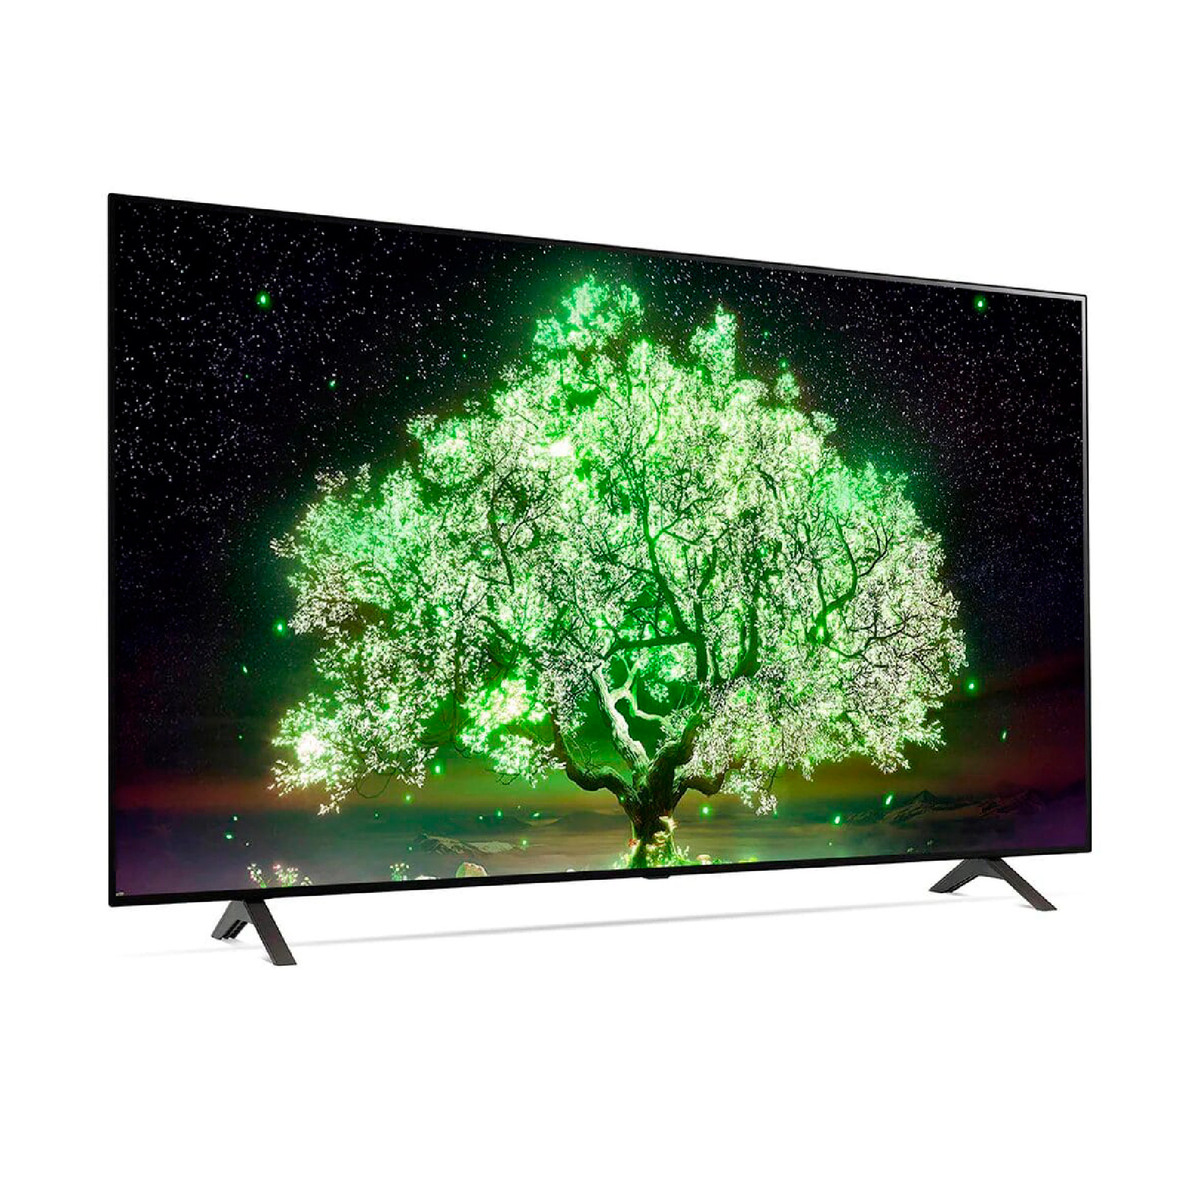 ال جي تلفزيون ذكي OLED مقاس 65 بوصة من سلسلة A1، تصميم شاشة سينمائية 4K Cinema HDR يعمل بنظام webOS وبتقنية تعتيم ThinQ AI